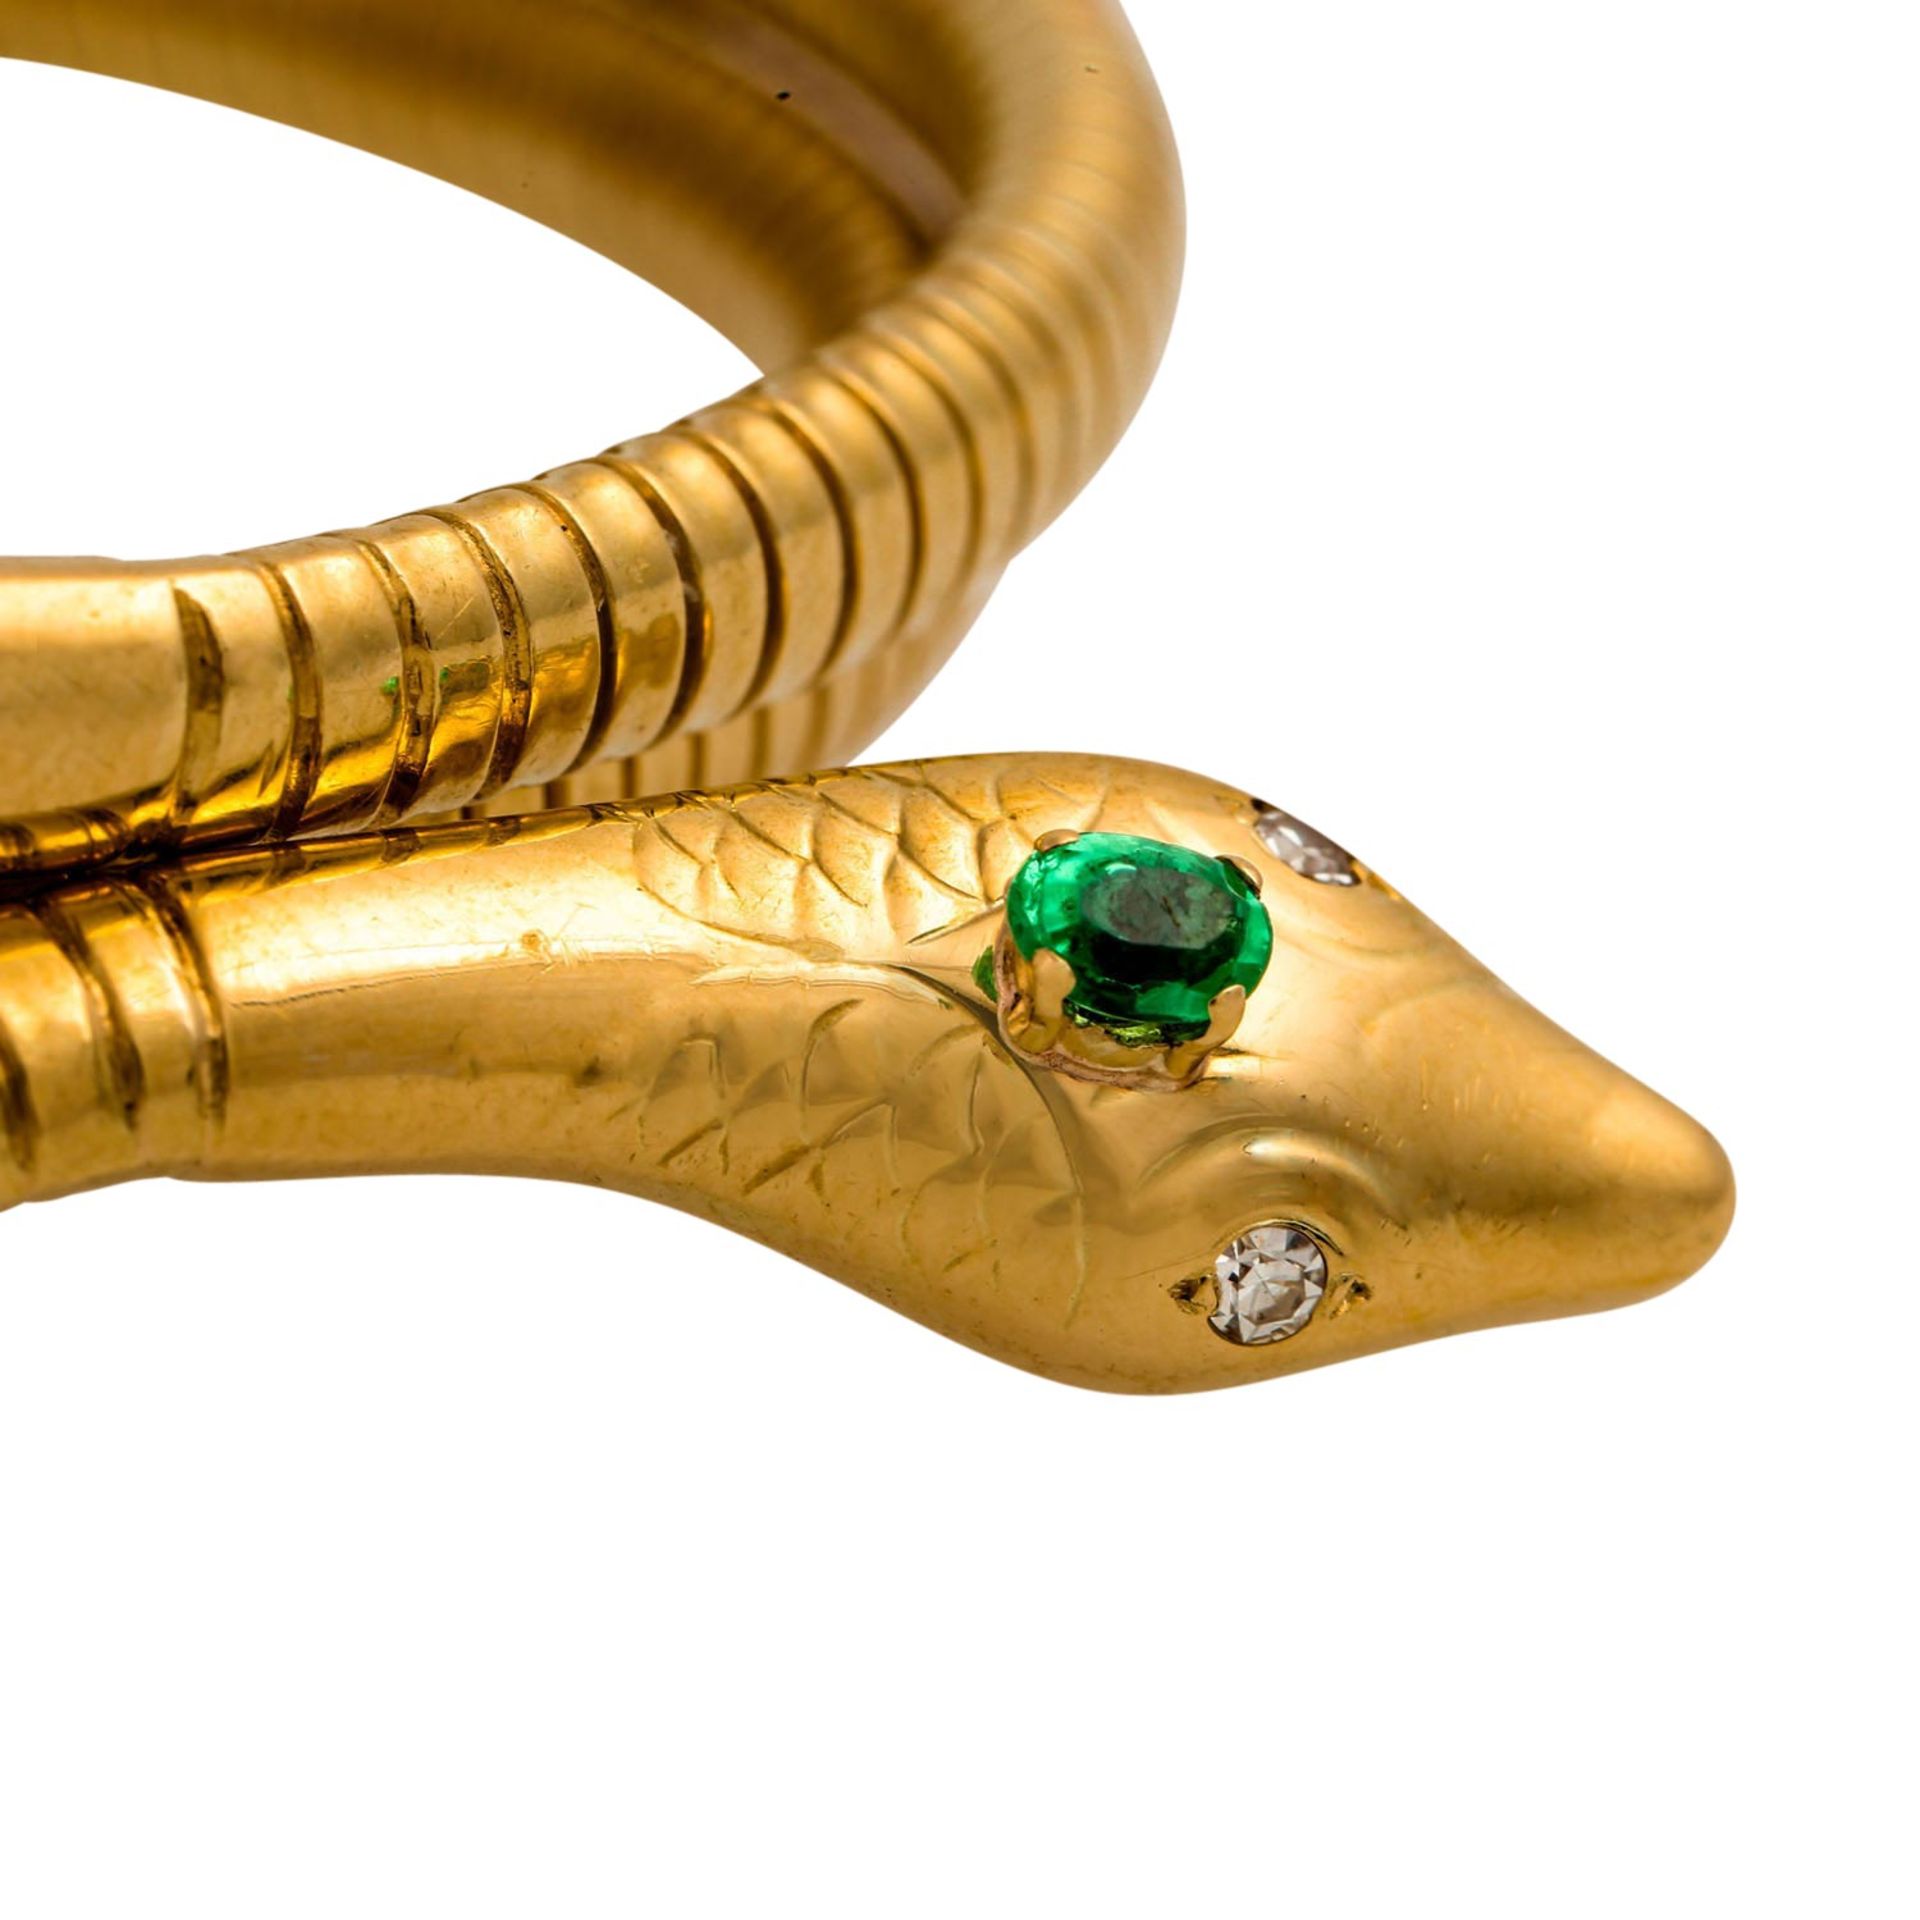 Armreif "Schlange" mit grünem Imitationsstein sowie 2 Diamanten von zus. ca. 0.04 ct, - Bild 5 aus 5